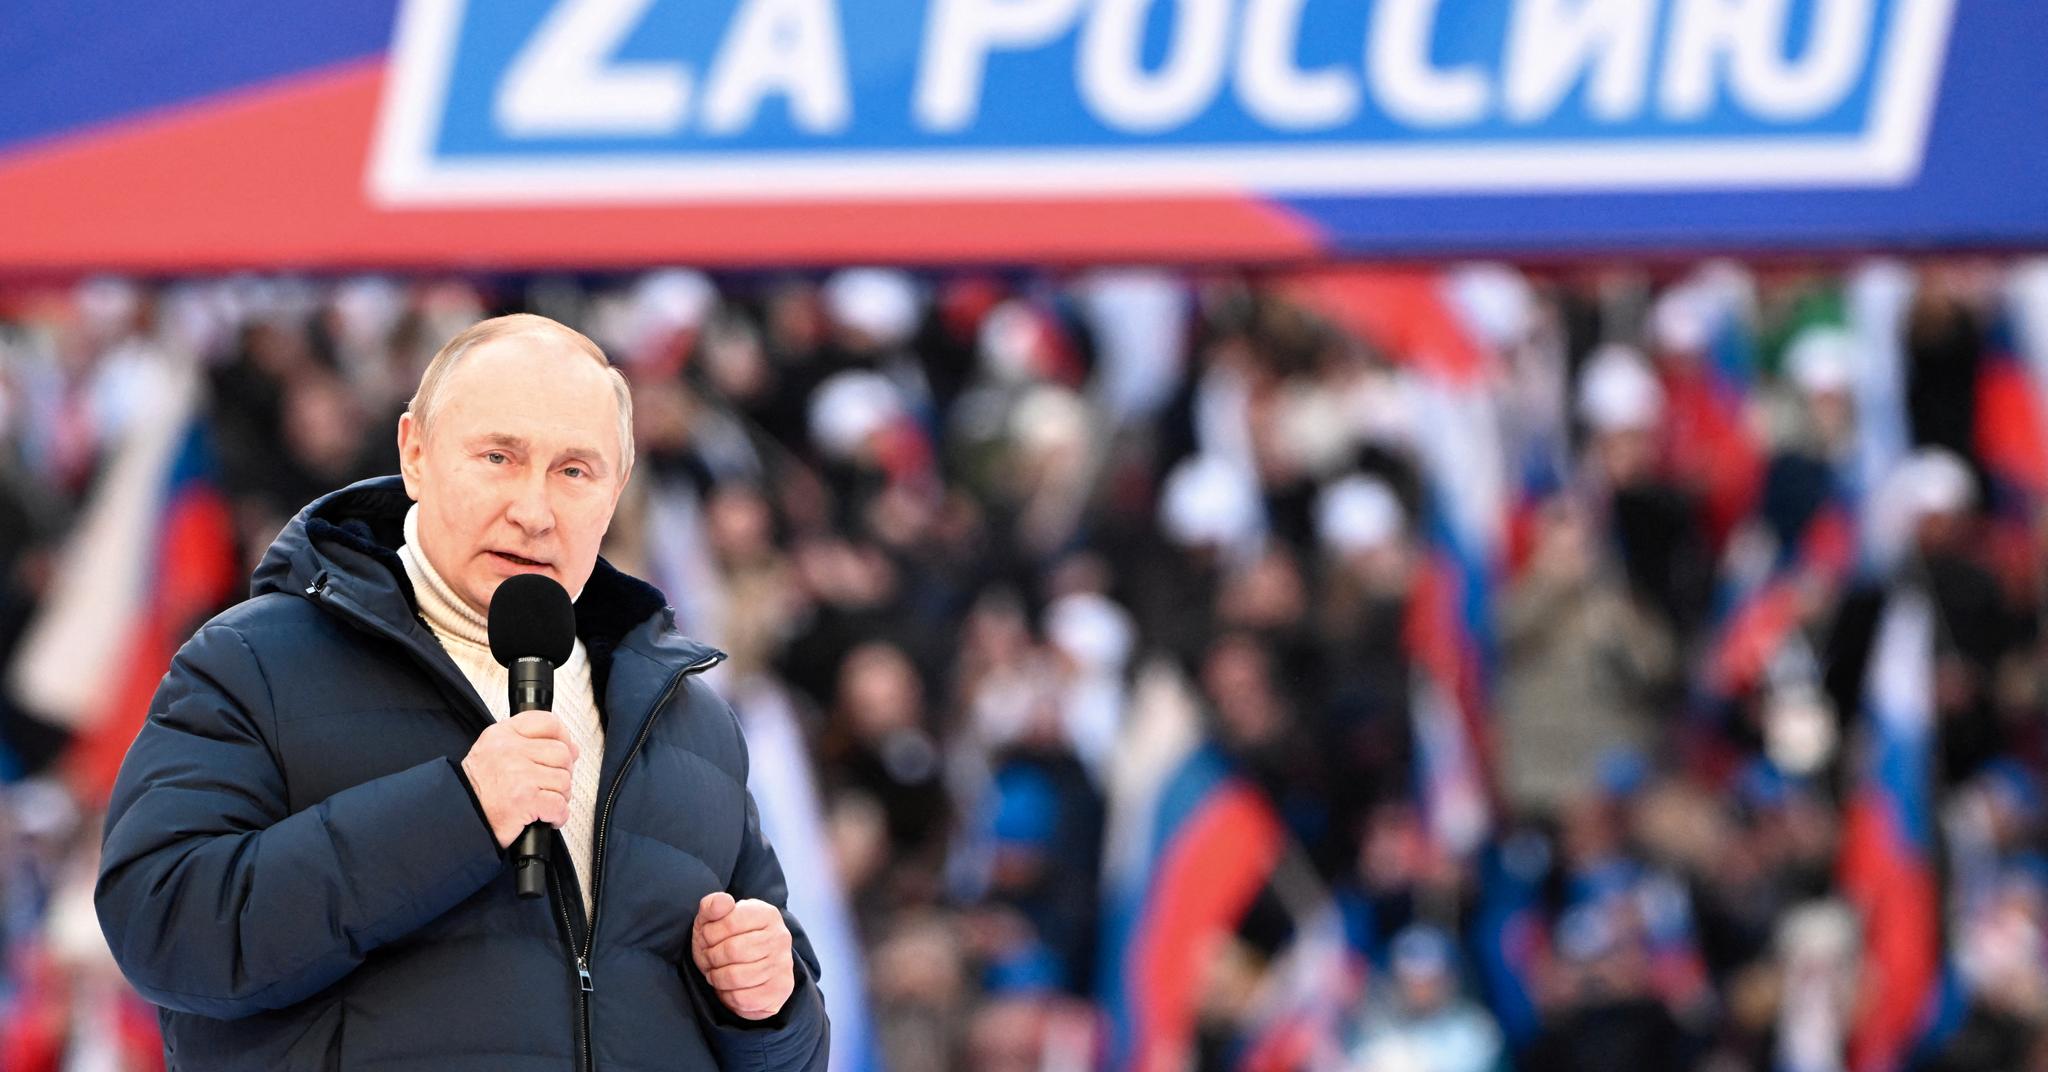 Russlands president Vladimir Putin holdt tale for 200.000 russere. Flere av deltagerne kom med uttalelser som Putin neppe hadde likt.